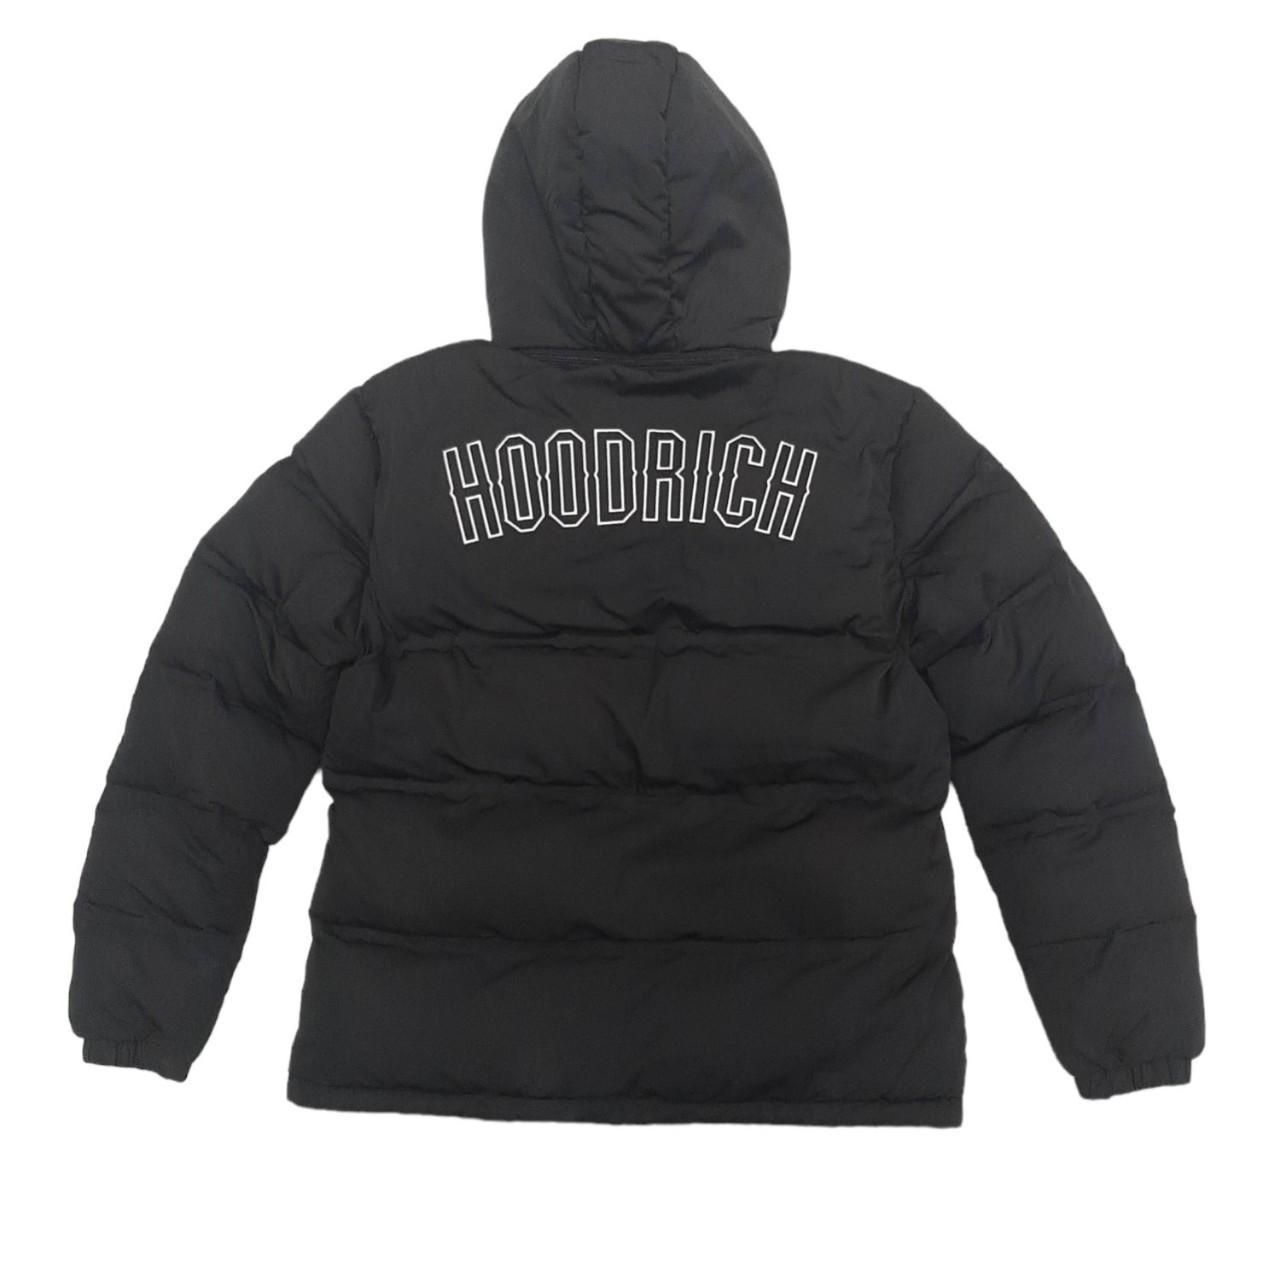 Hoodrich OG stack jacket XL size but fits like a... - Depop